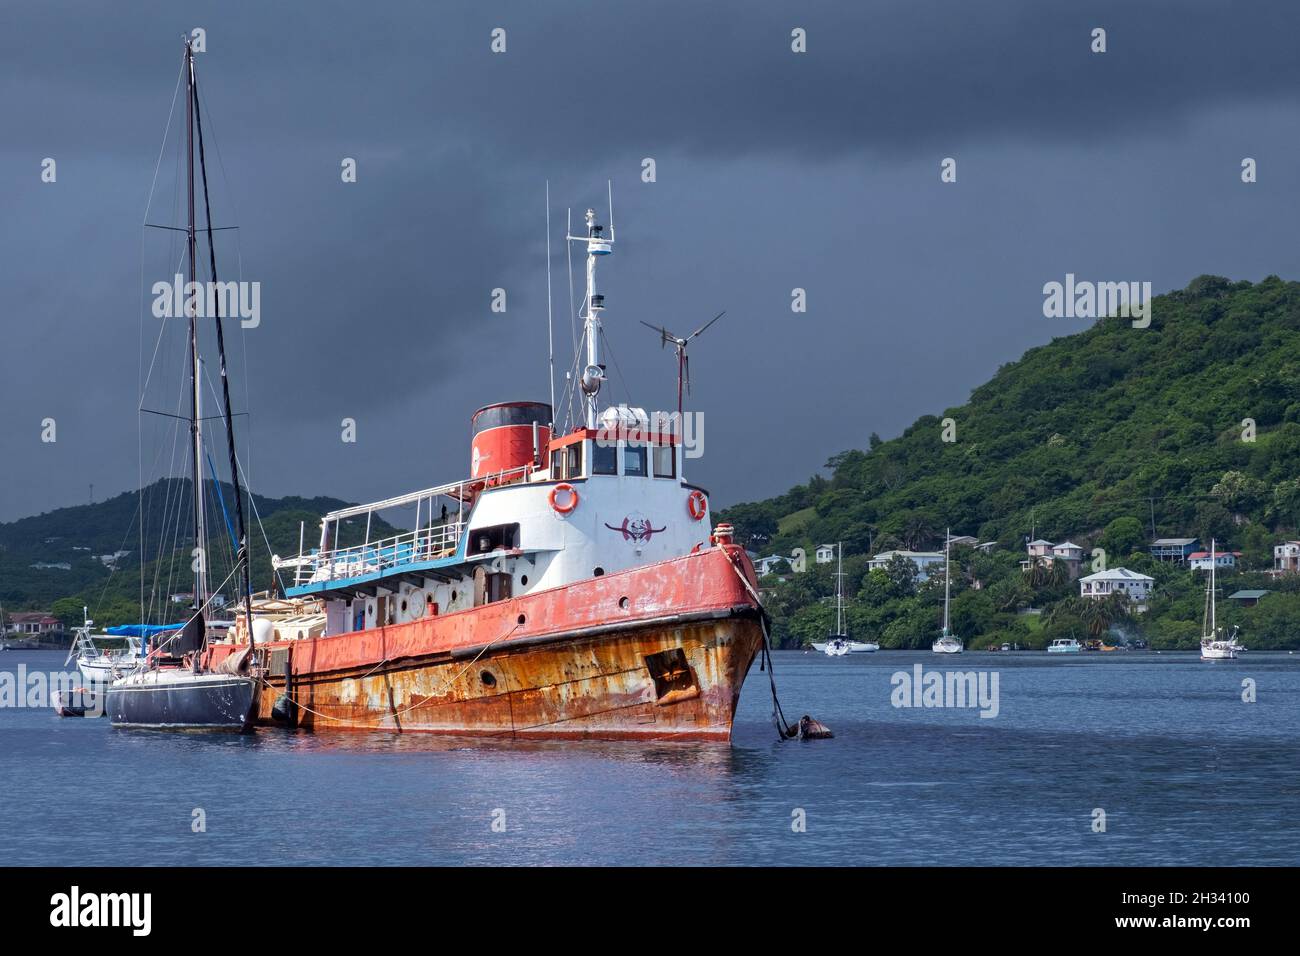 Vieux navire rouillé parmi les voiliers attendant la fin de la saison des ouragans dans la baie de Woburn, à Saint George, sur l'île de Grenade, dans la mer des Caraïbes Banque D'Images